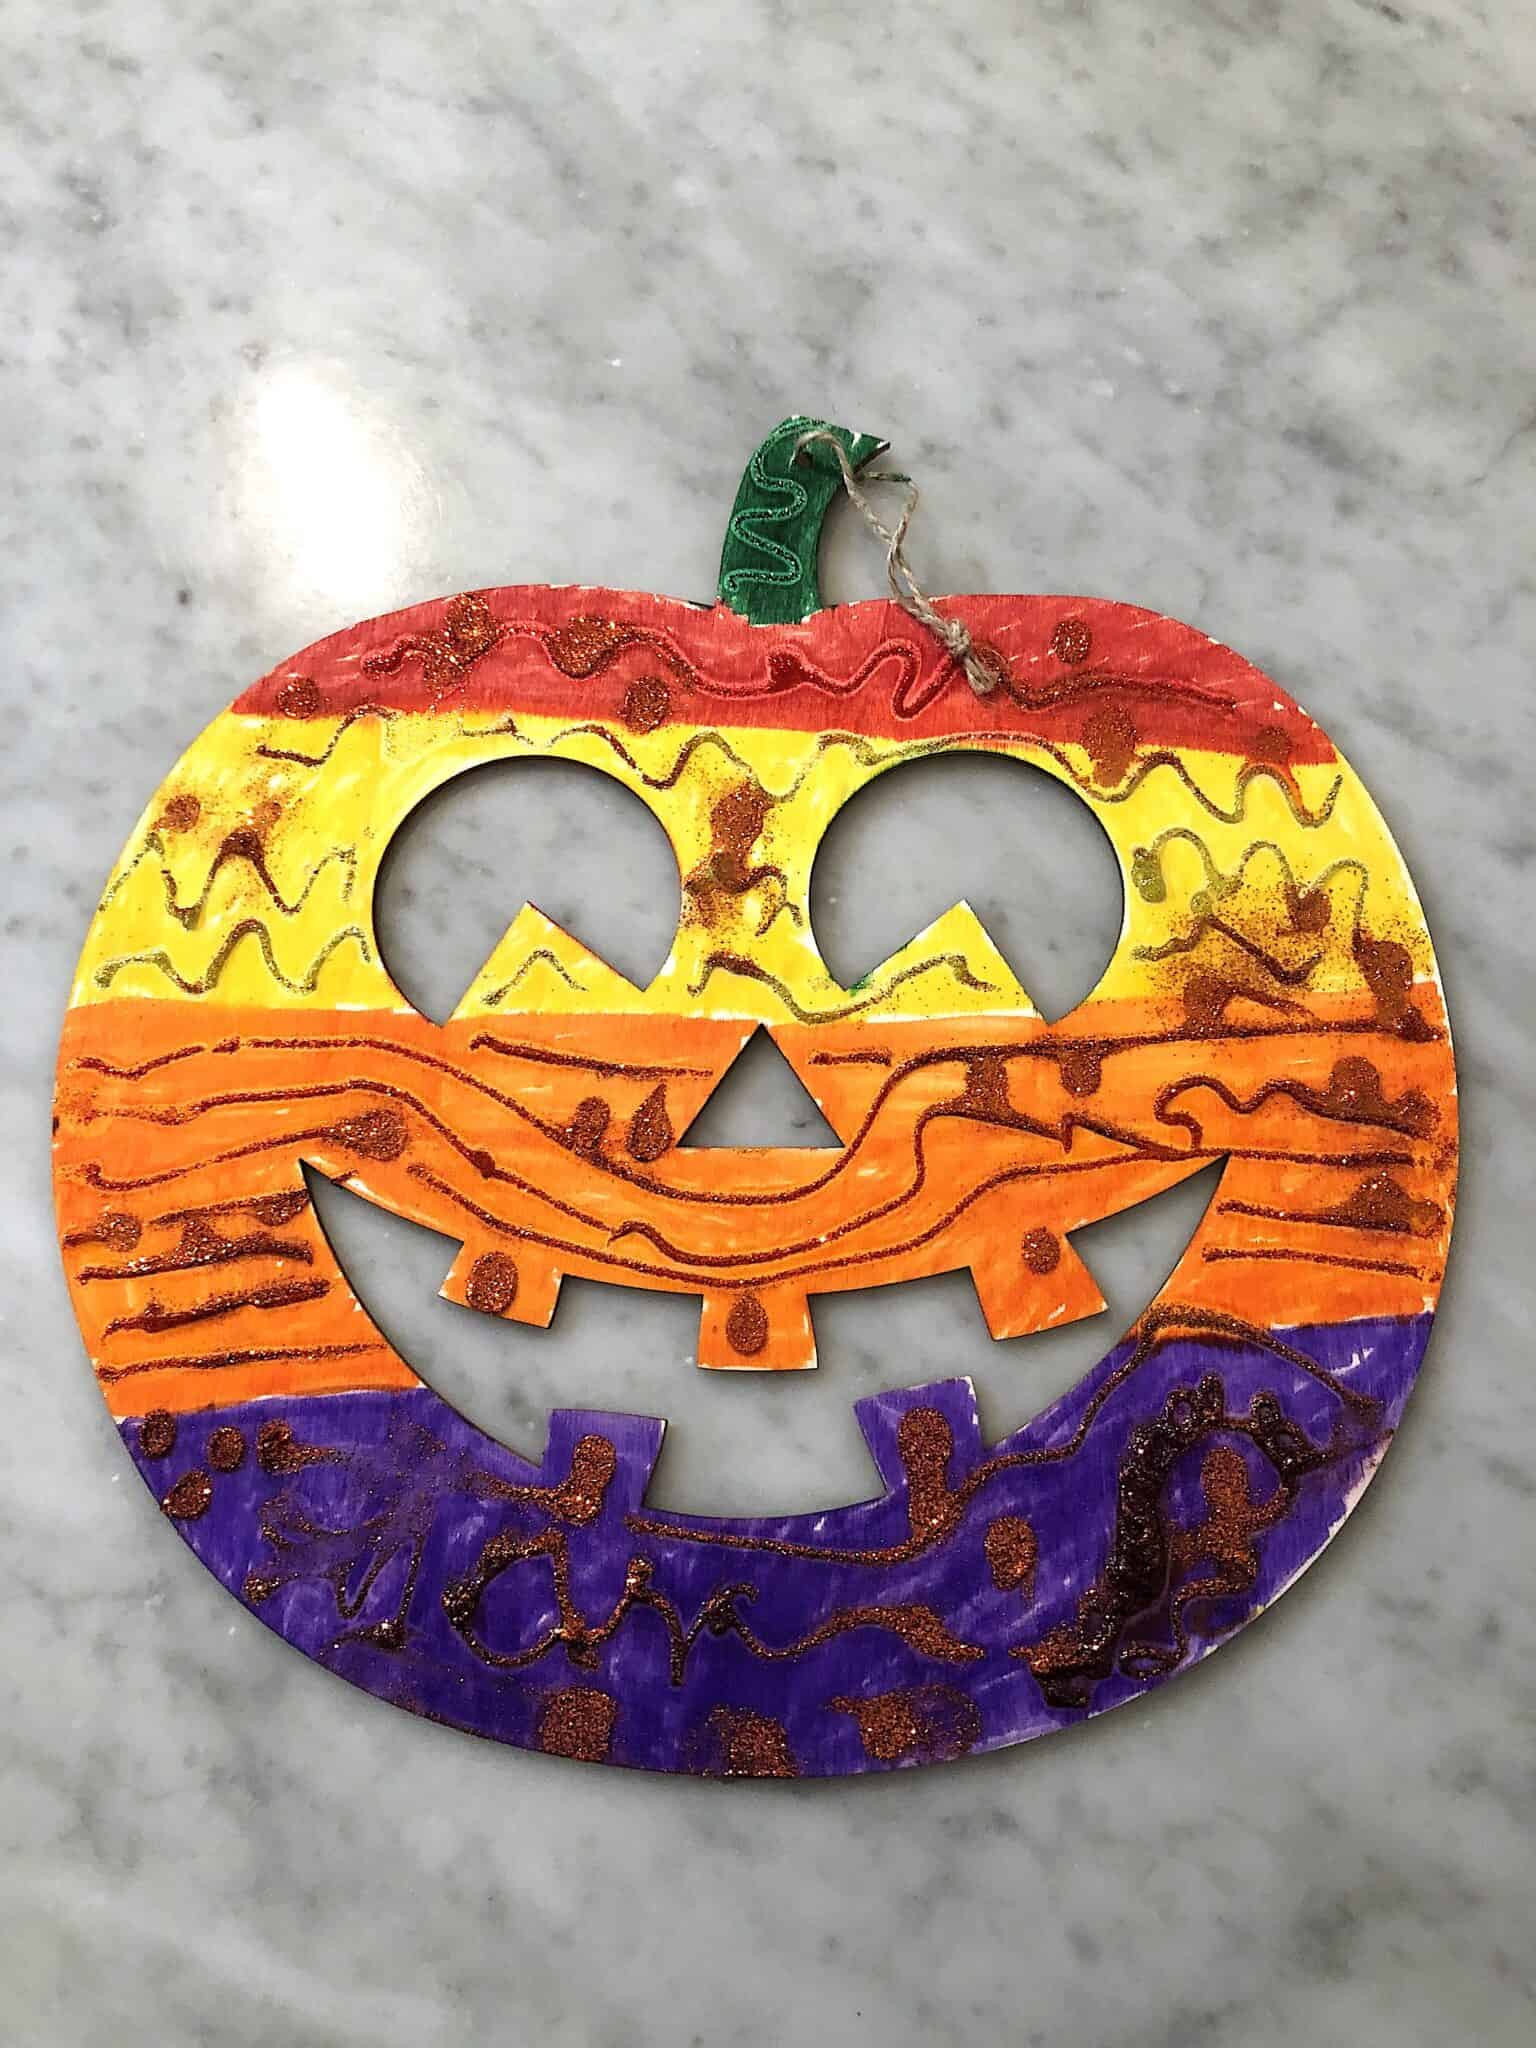 halloween craft kindergarten